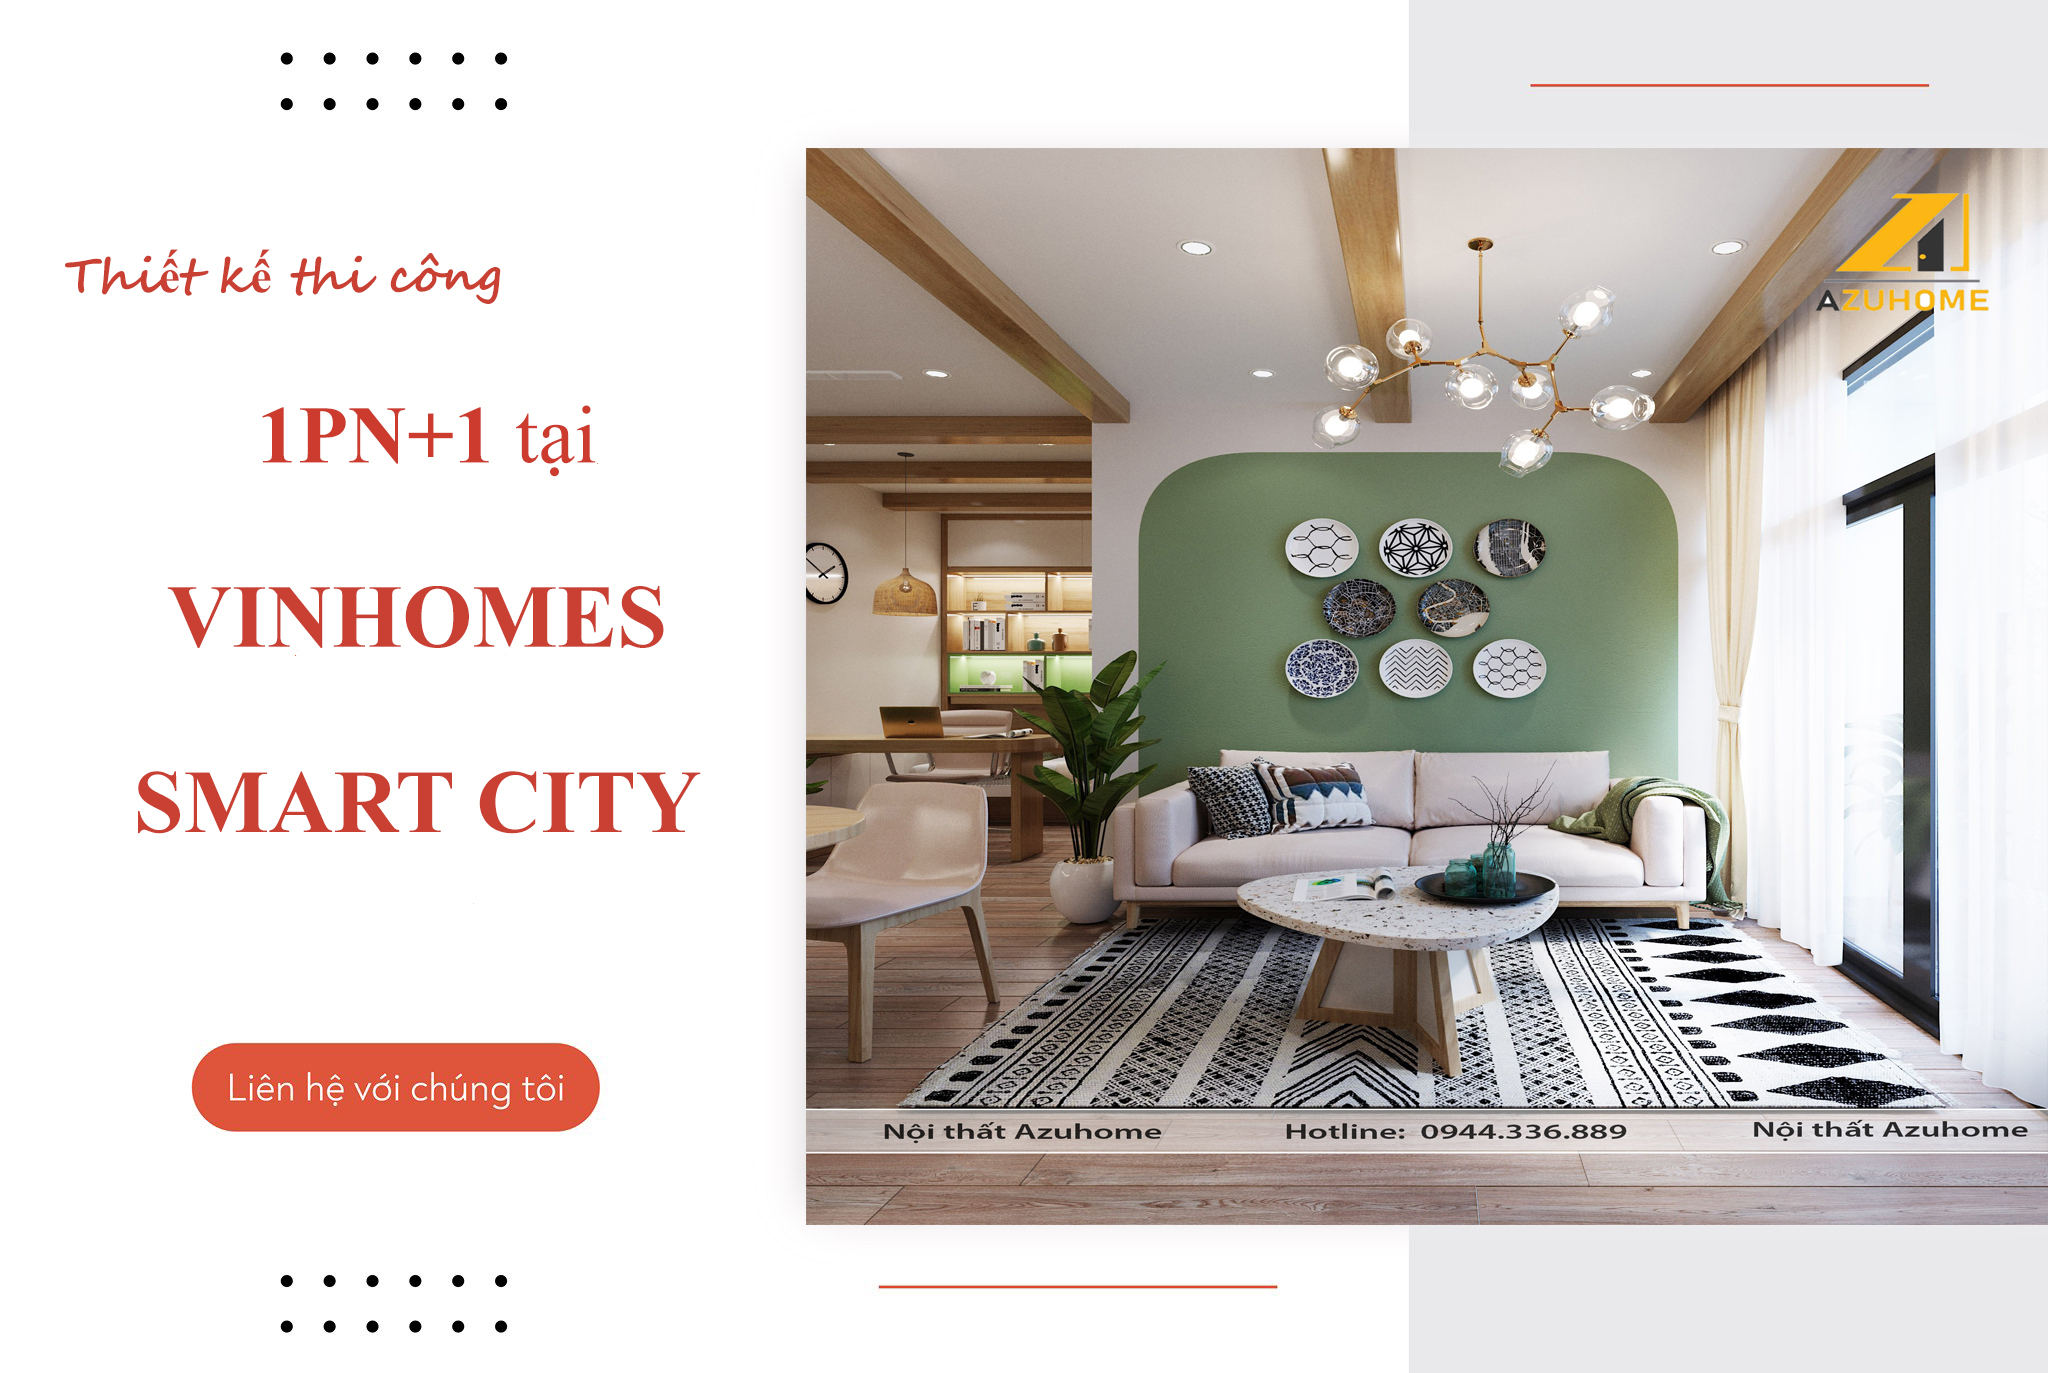 Nằm tại khu đô thị hiện đại Vinhomes Smart City, căn hộ của chúng tôi sẽ đem lại cho bạn không gian sống tiện nghi và an ninh. Với những tiện ích cao cấp, bạn sẽ trải nghiệm một cuộc sống đáng mơ ước tại căn hộ của mình.